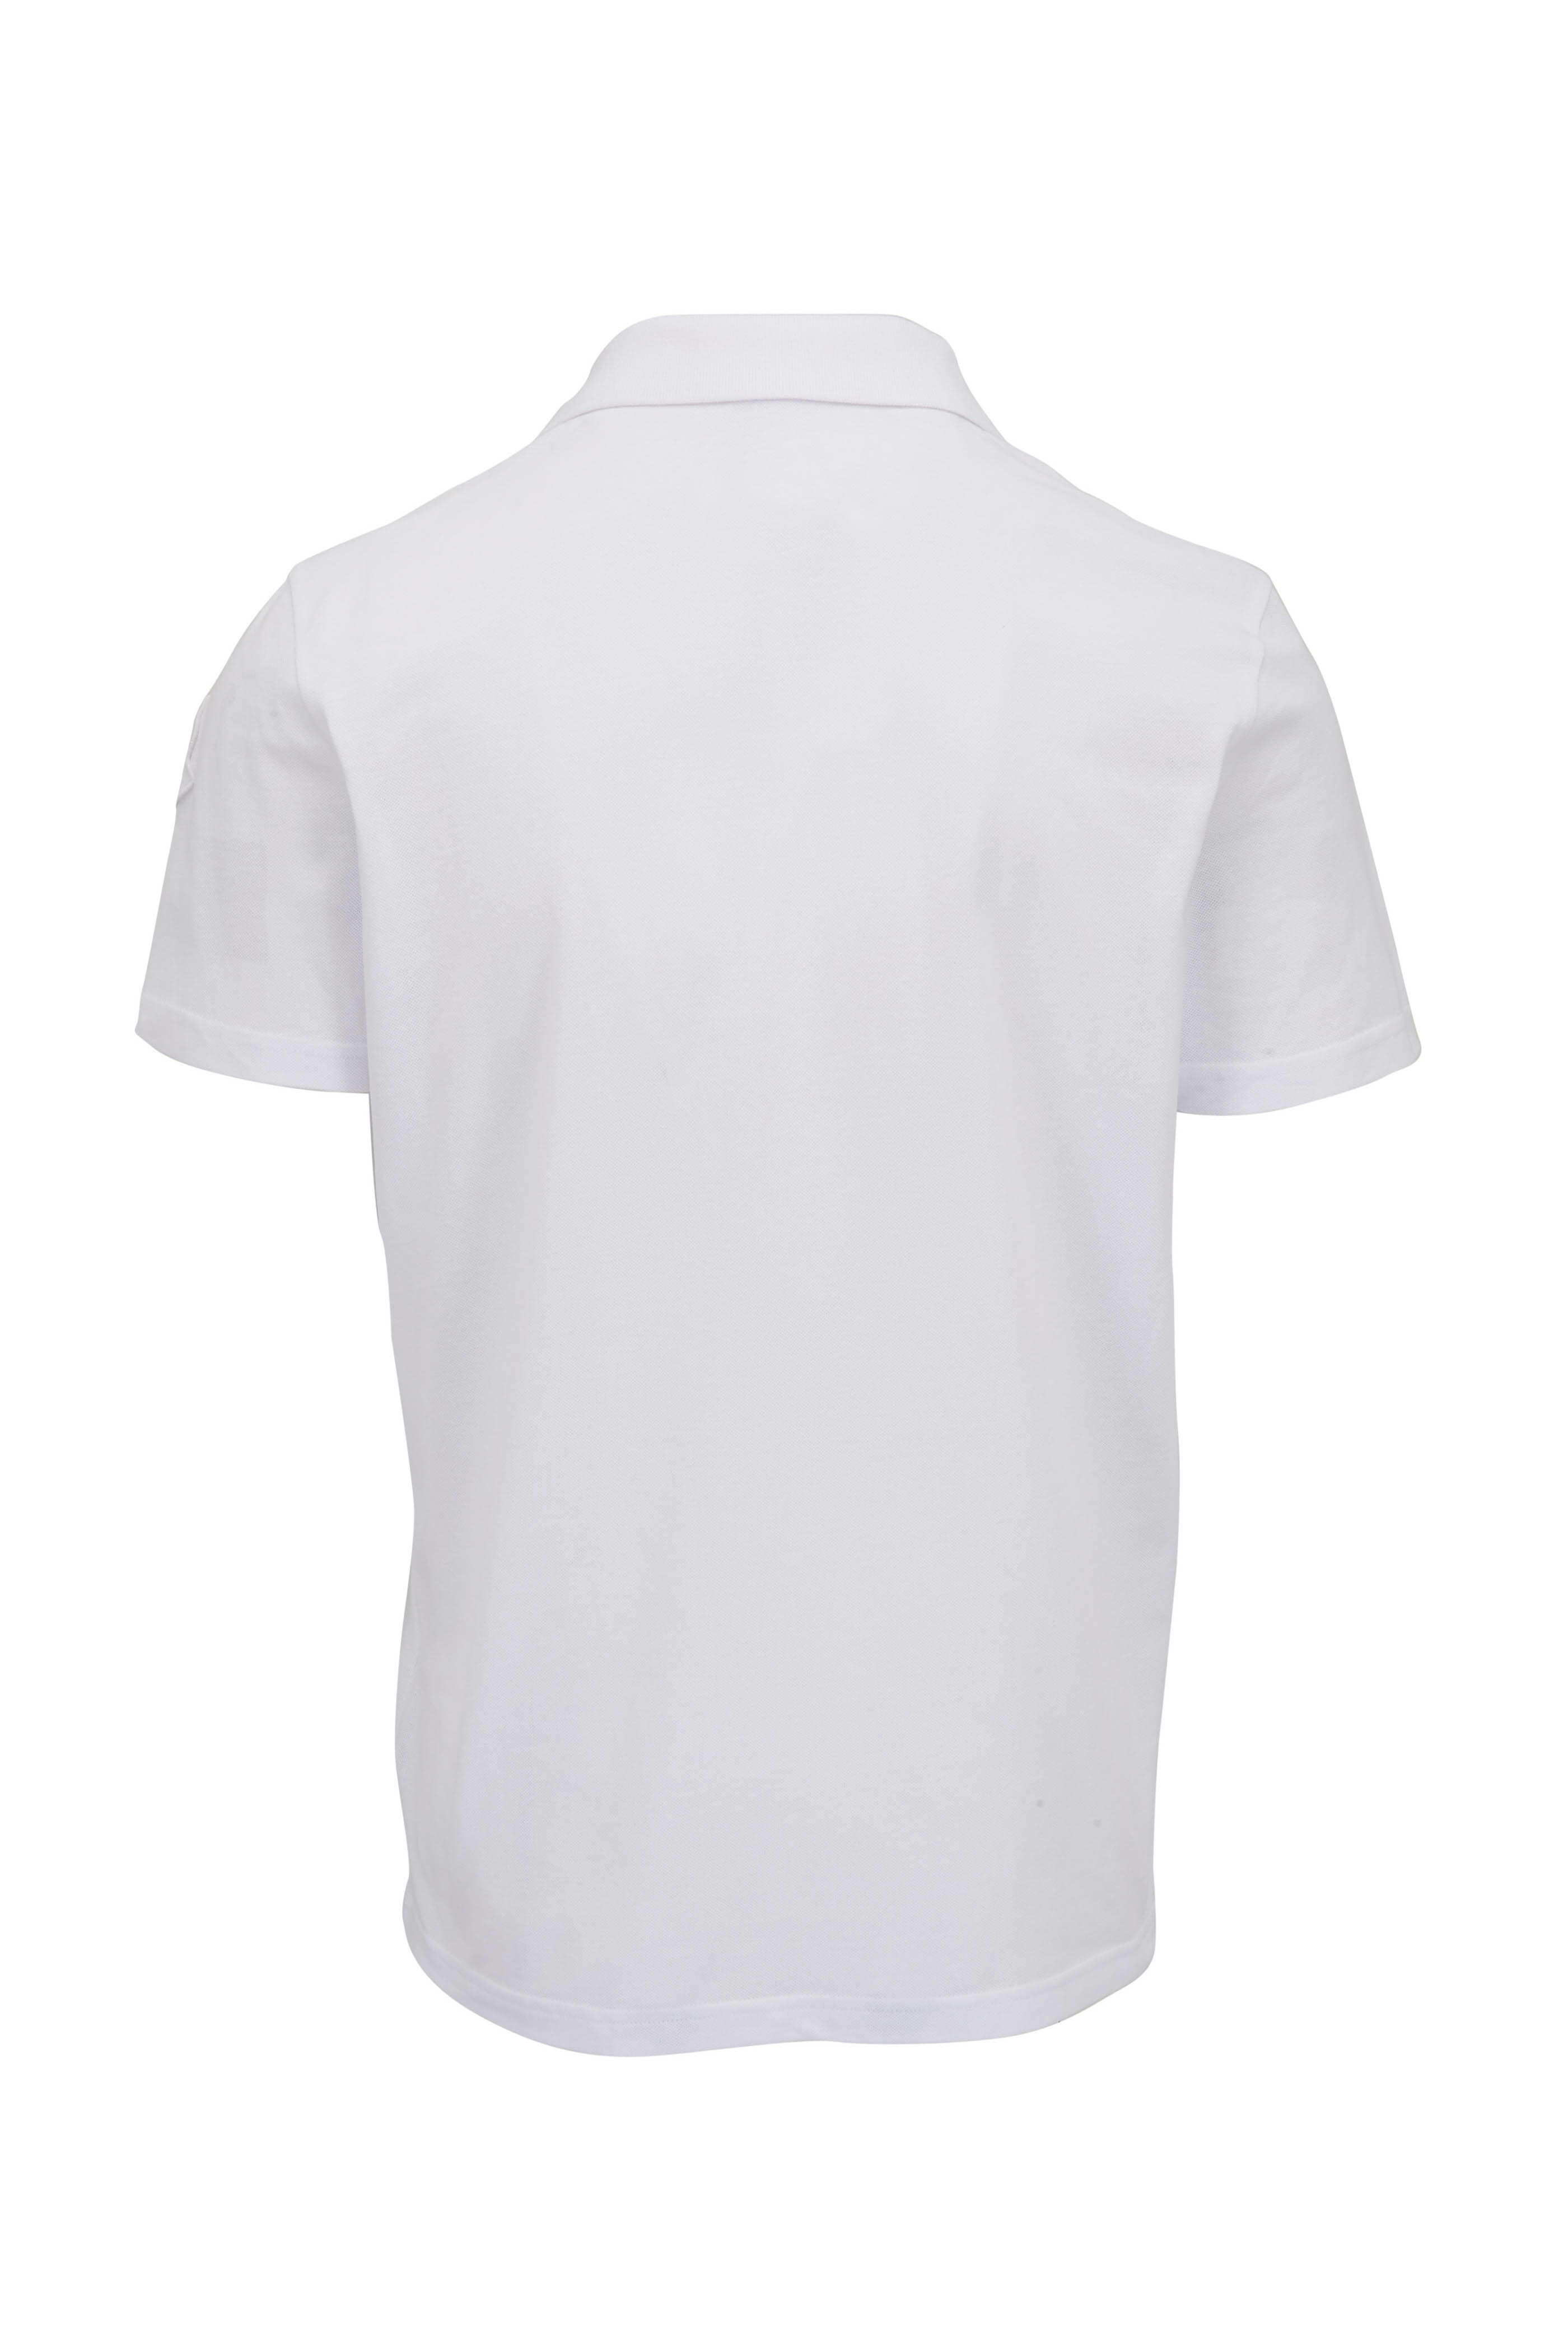 Moncler - White Cotton Quarter Zip Polo | Mitchell Stores